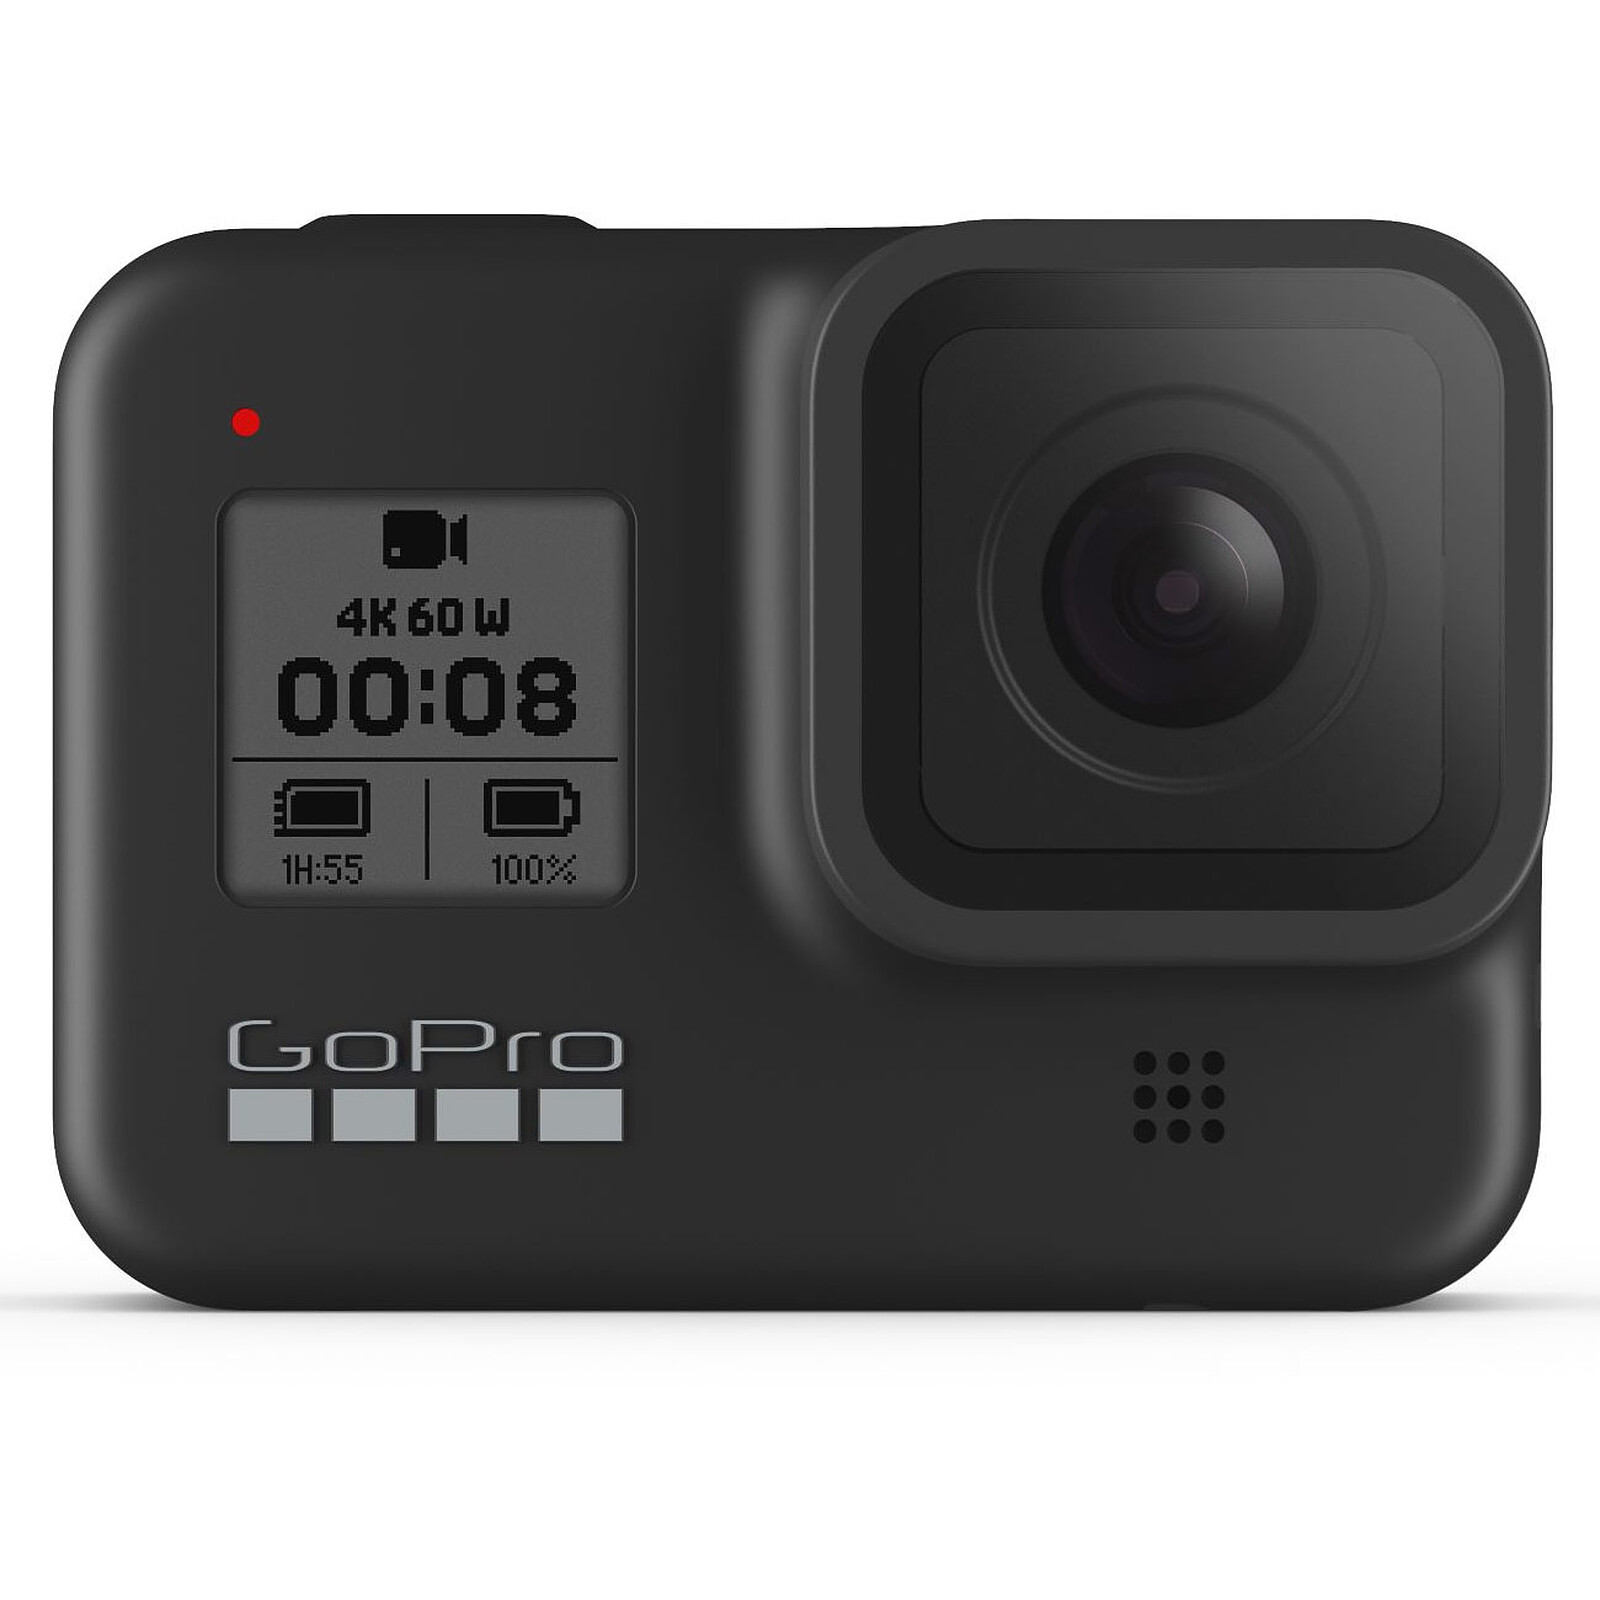 Caméra d'action HERO12 Black (étanche + stabilisation) de GoPro